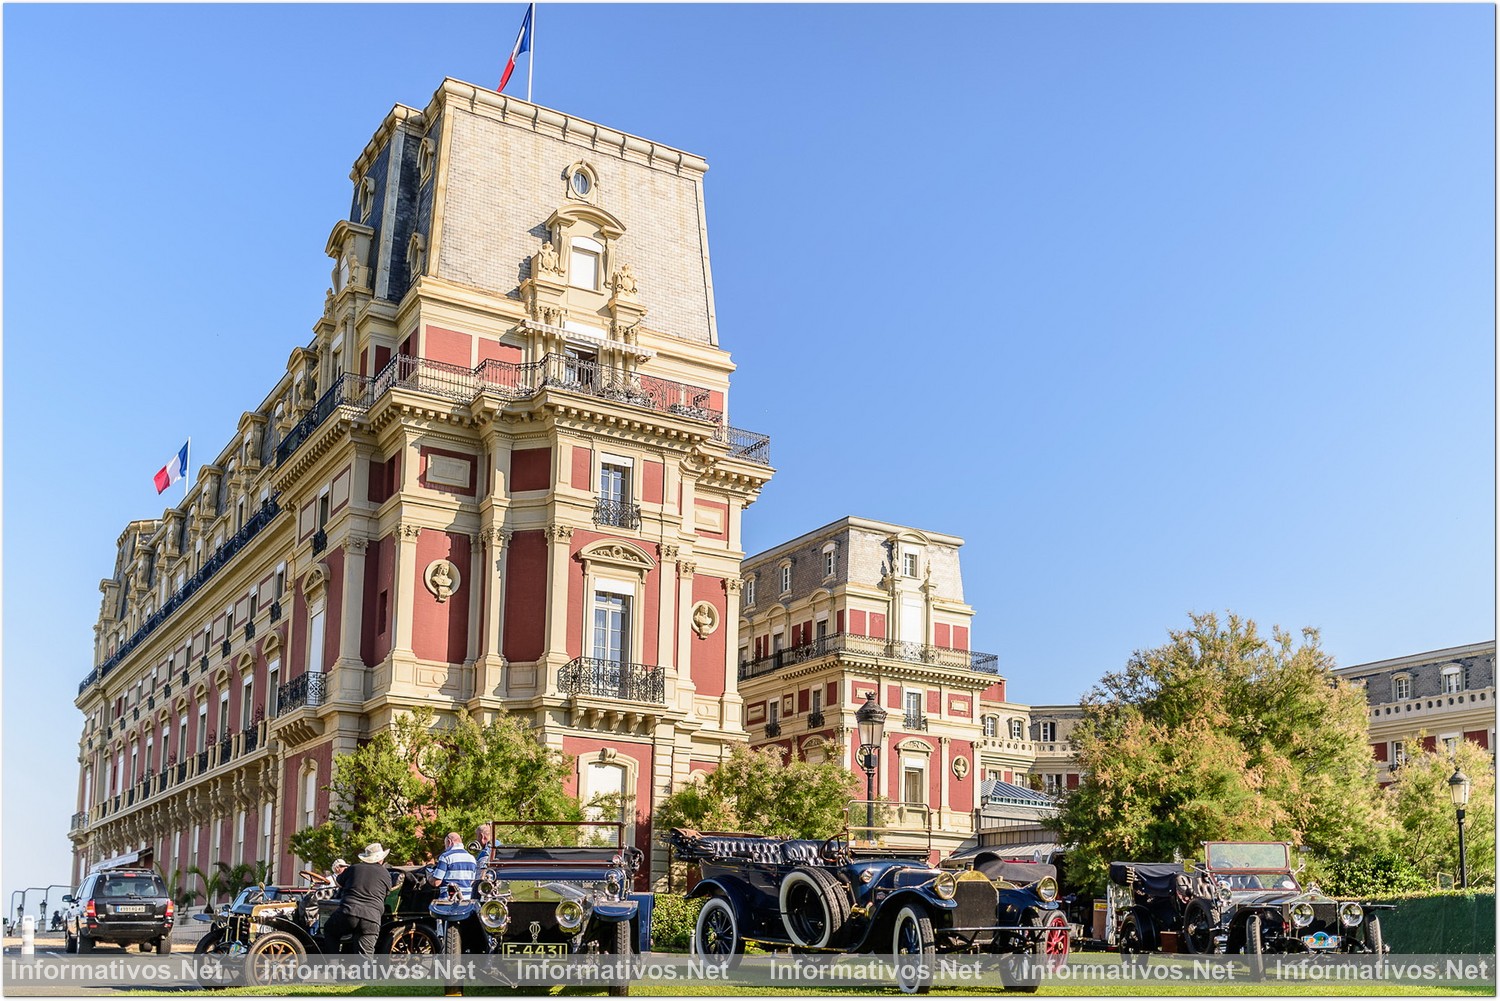 El Hotel Du Palais, construído en Biarritz en 1854 por el emperador Napoleón III es el testimonio de su amor por la emperatriz Eugenia, una verdadera incondicional de la región del País Vasco, fue, en su tiempo, residencia de verano de la pareja y su corte.